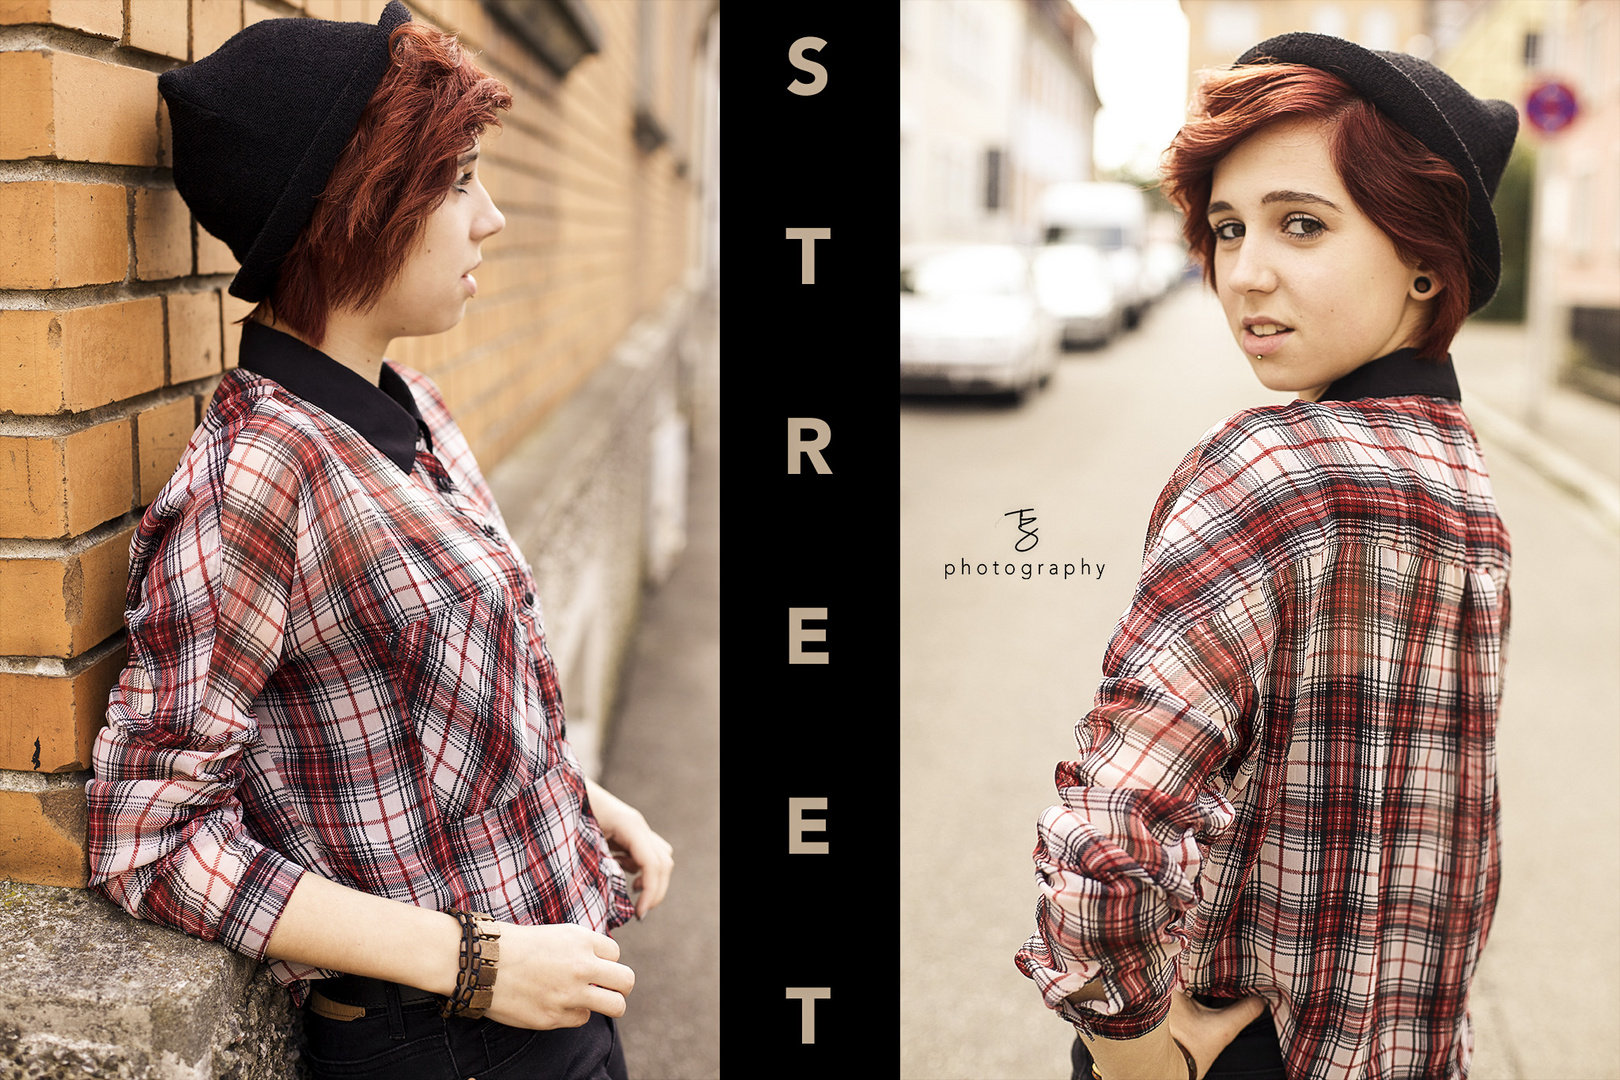 STREET